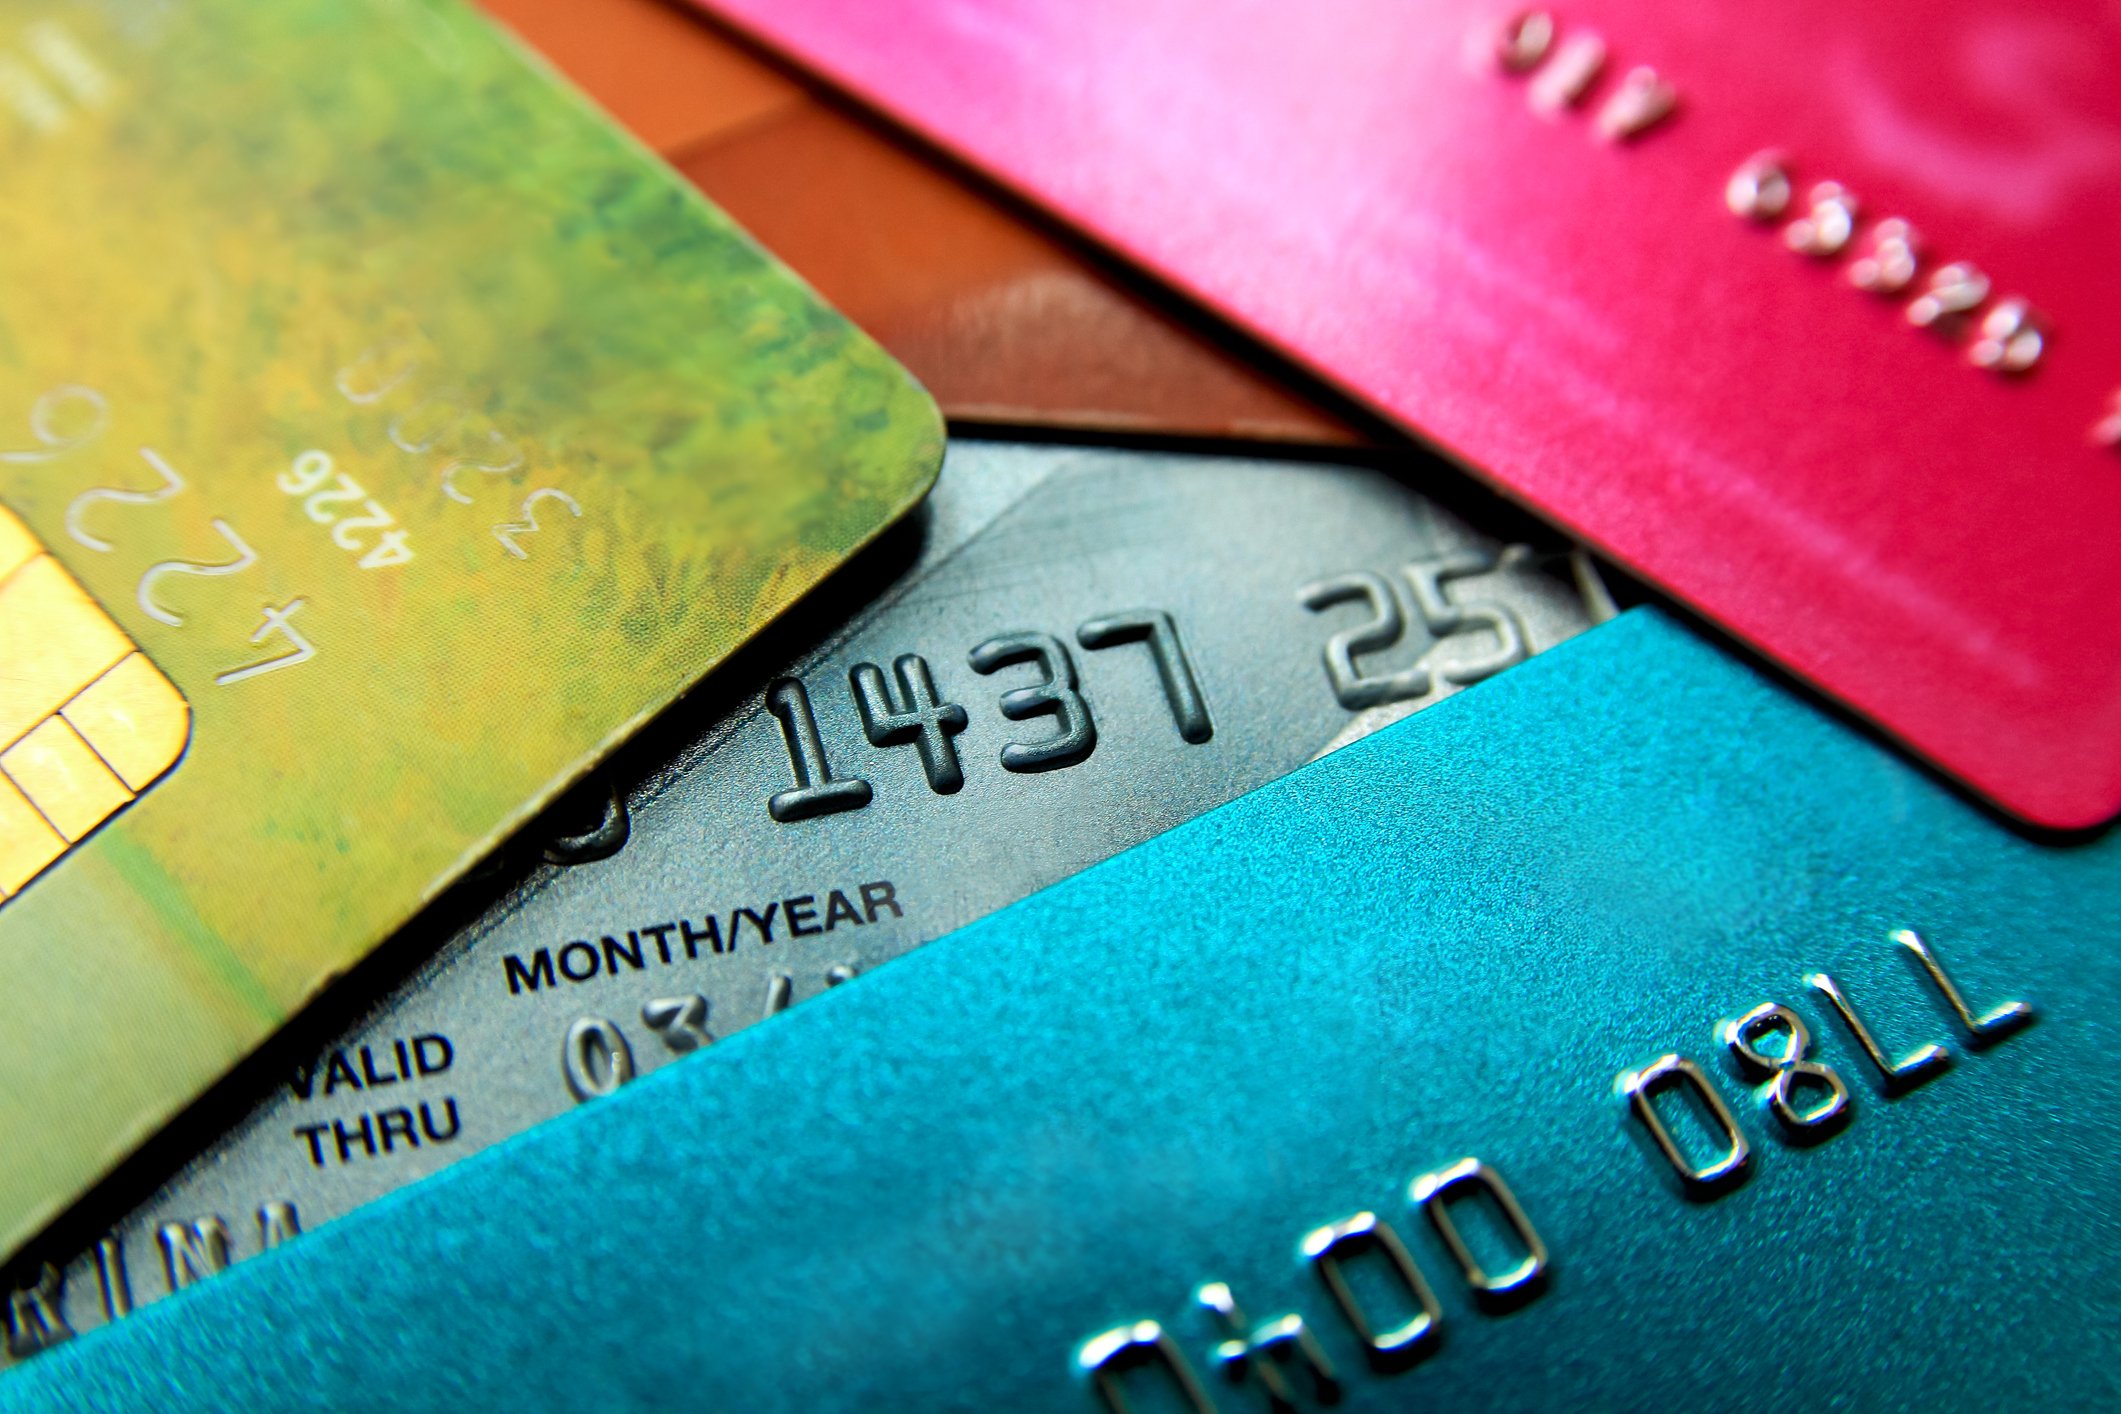 do car dealerships take credit cards